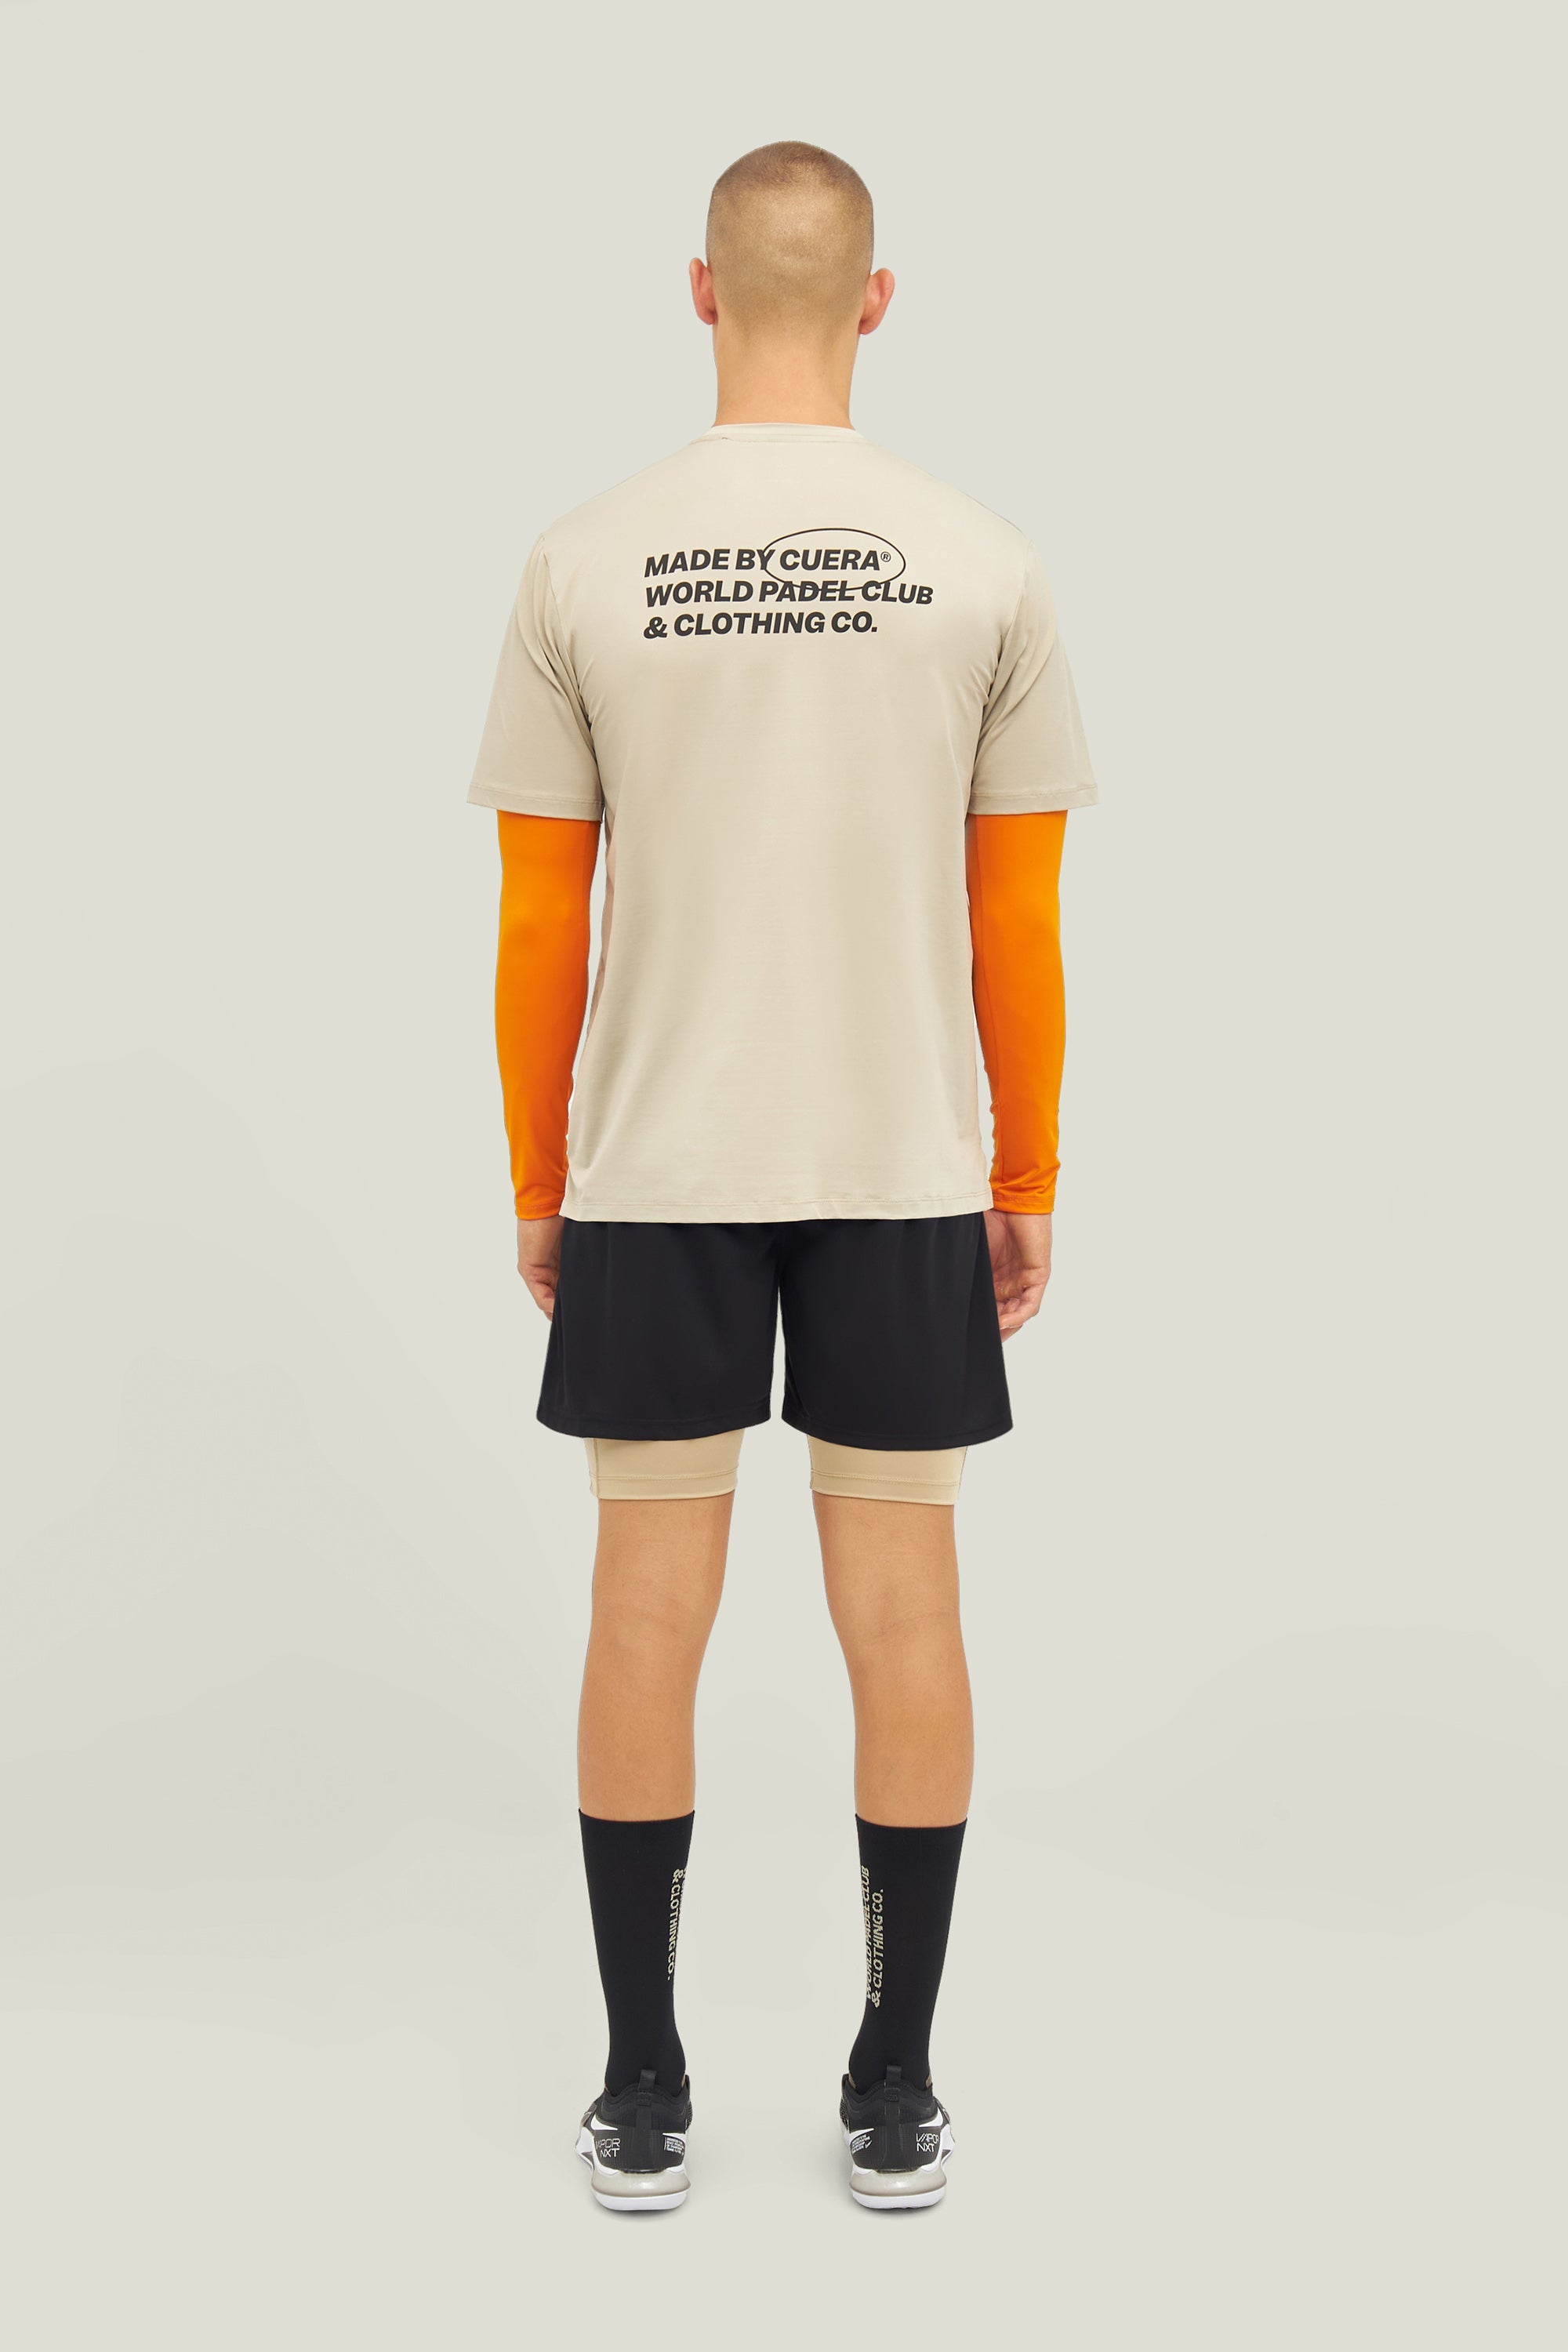 Cuera Oncourt Made T-shirt (Grijs)